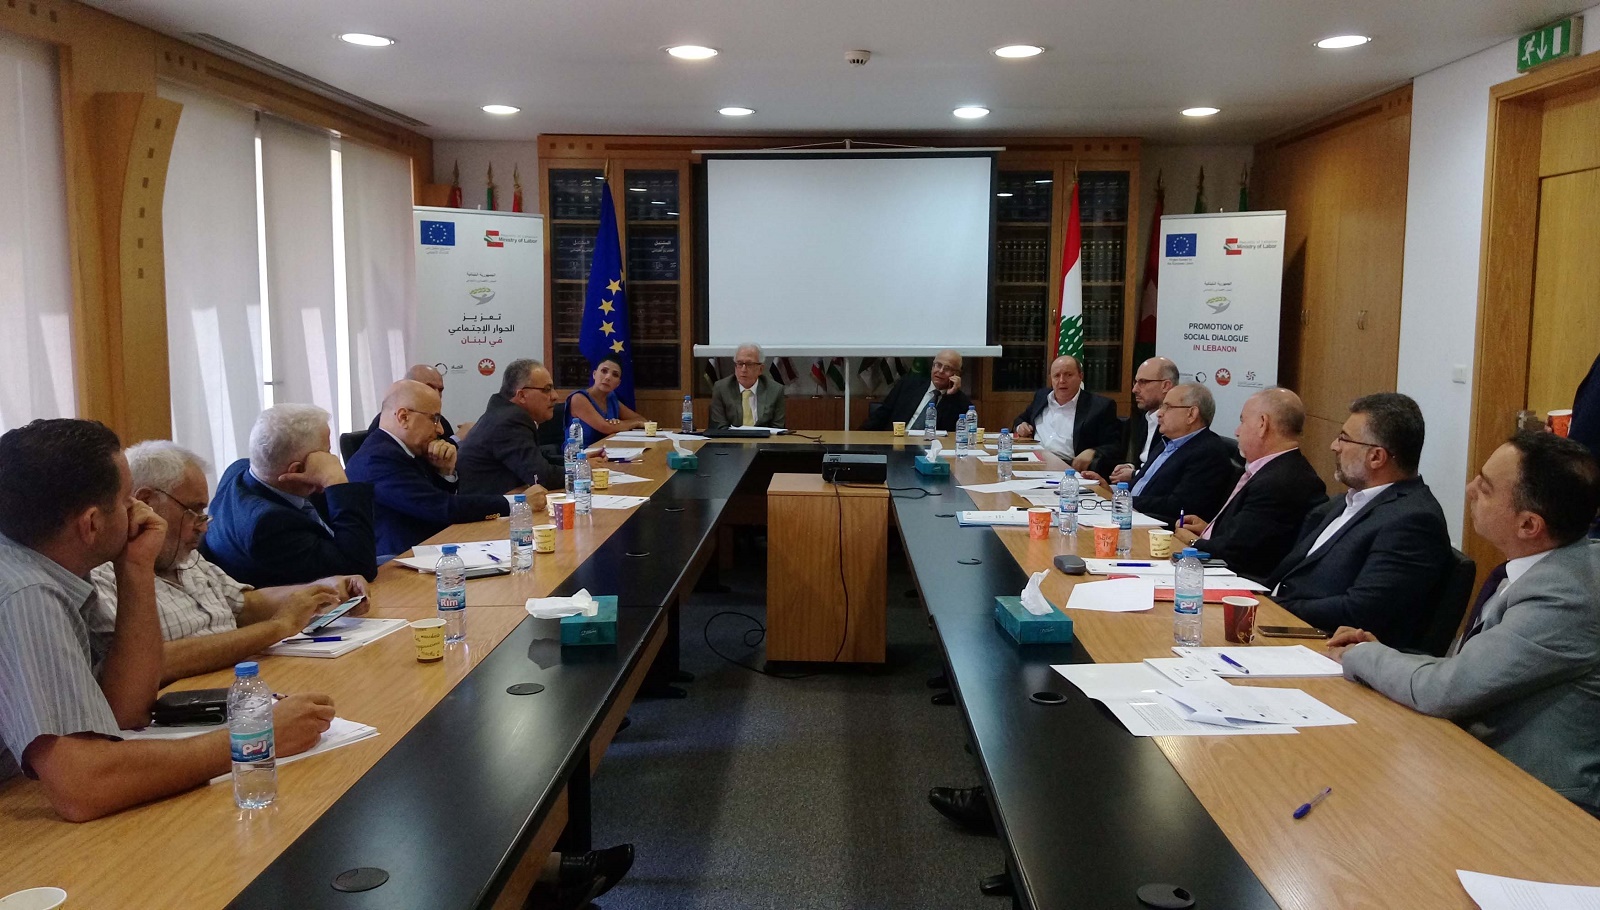 تدريب الشّركاء الاجتماعيين الثلاثيّي الأطراف في إطار المشروع المموّل من الاتحاد الأوروبي لتعزيز الحوار الاجتماعي في لبنان